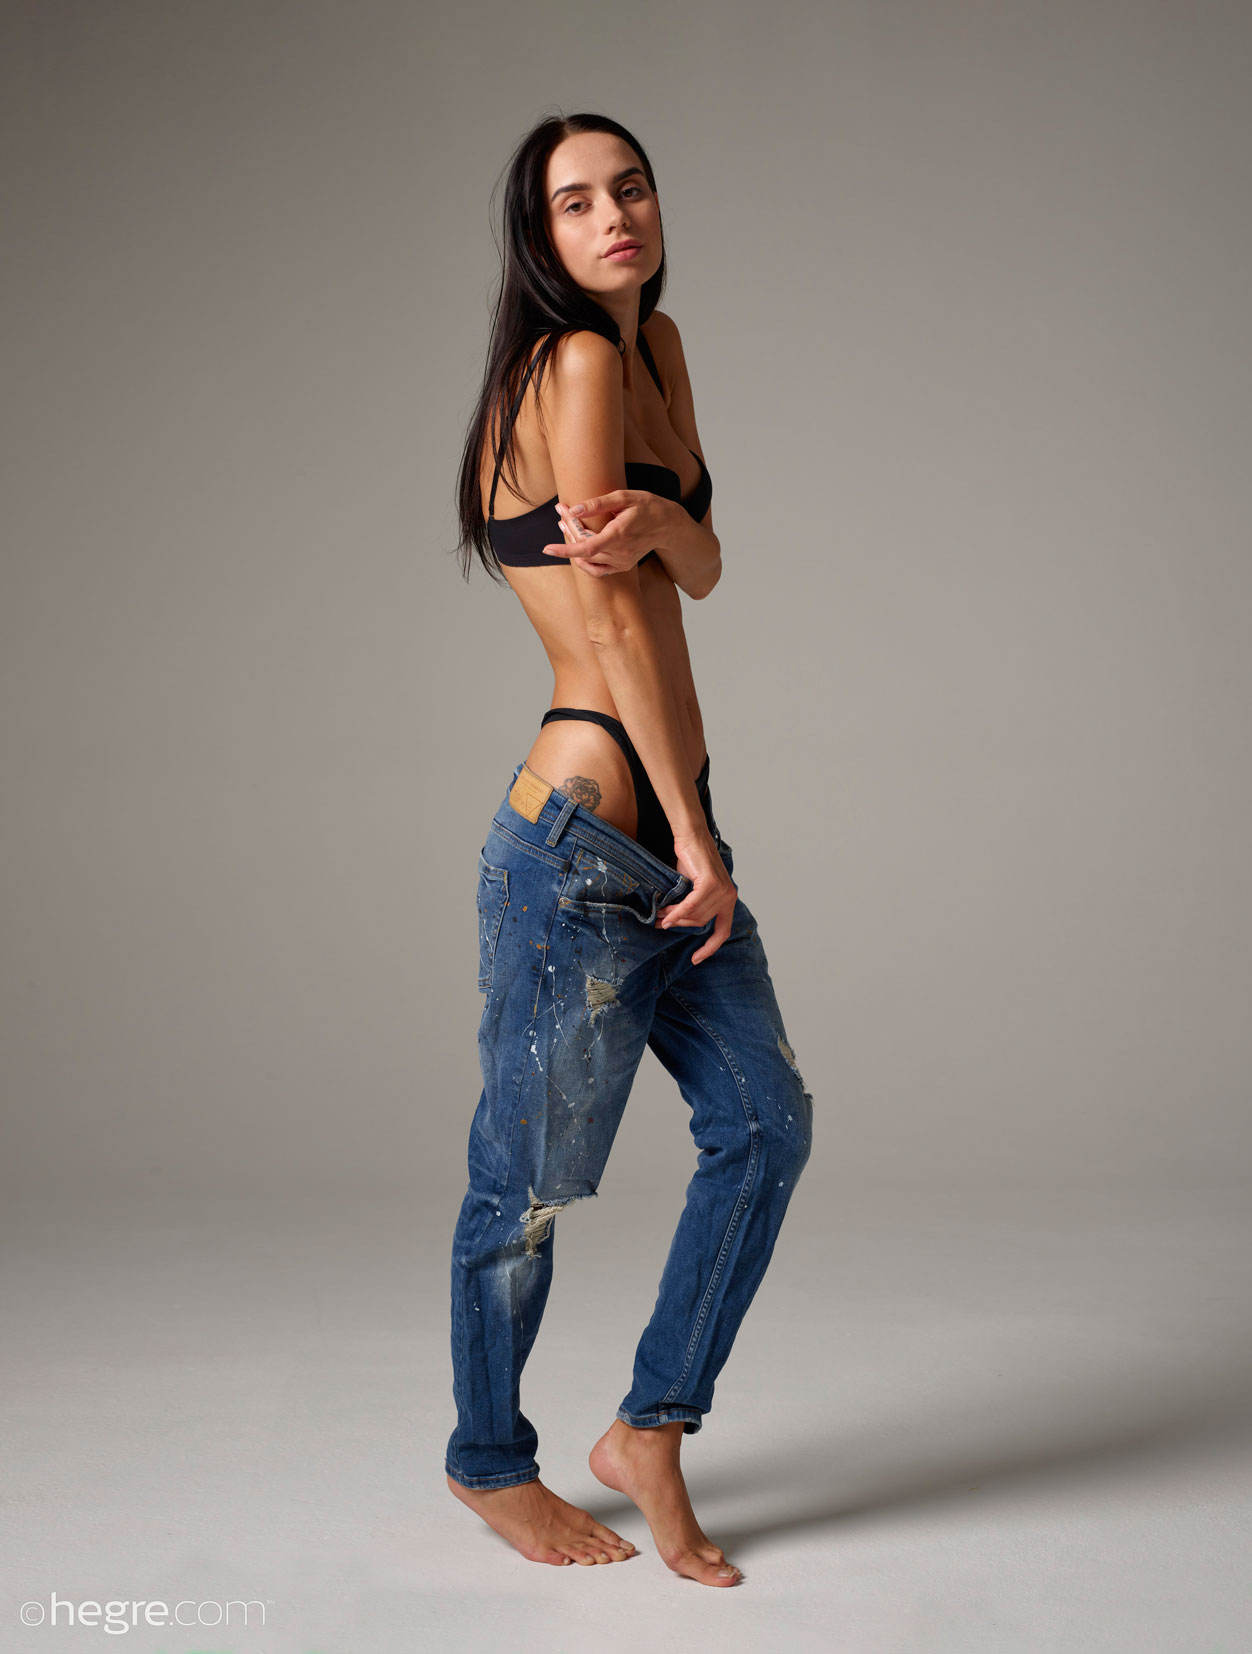 Dita V Hard Bodied Babe in Jeans